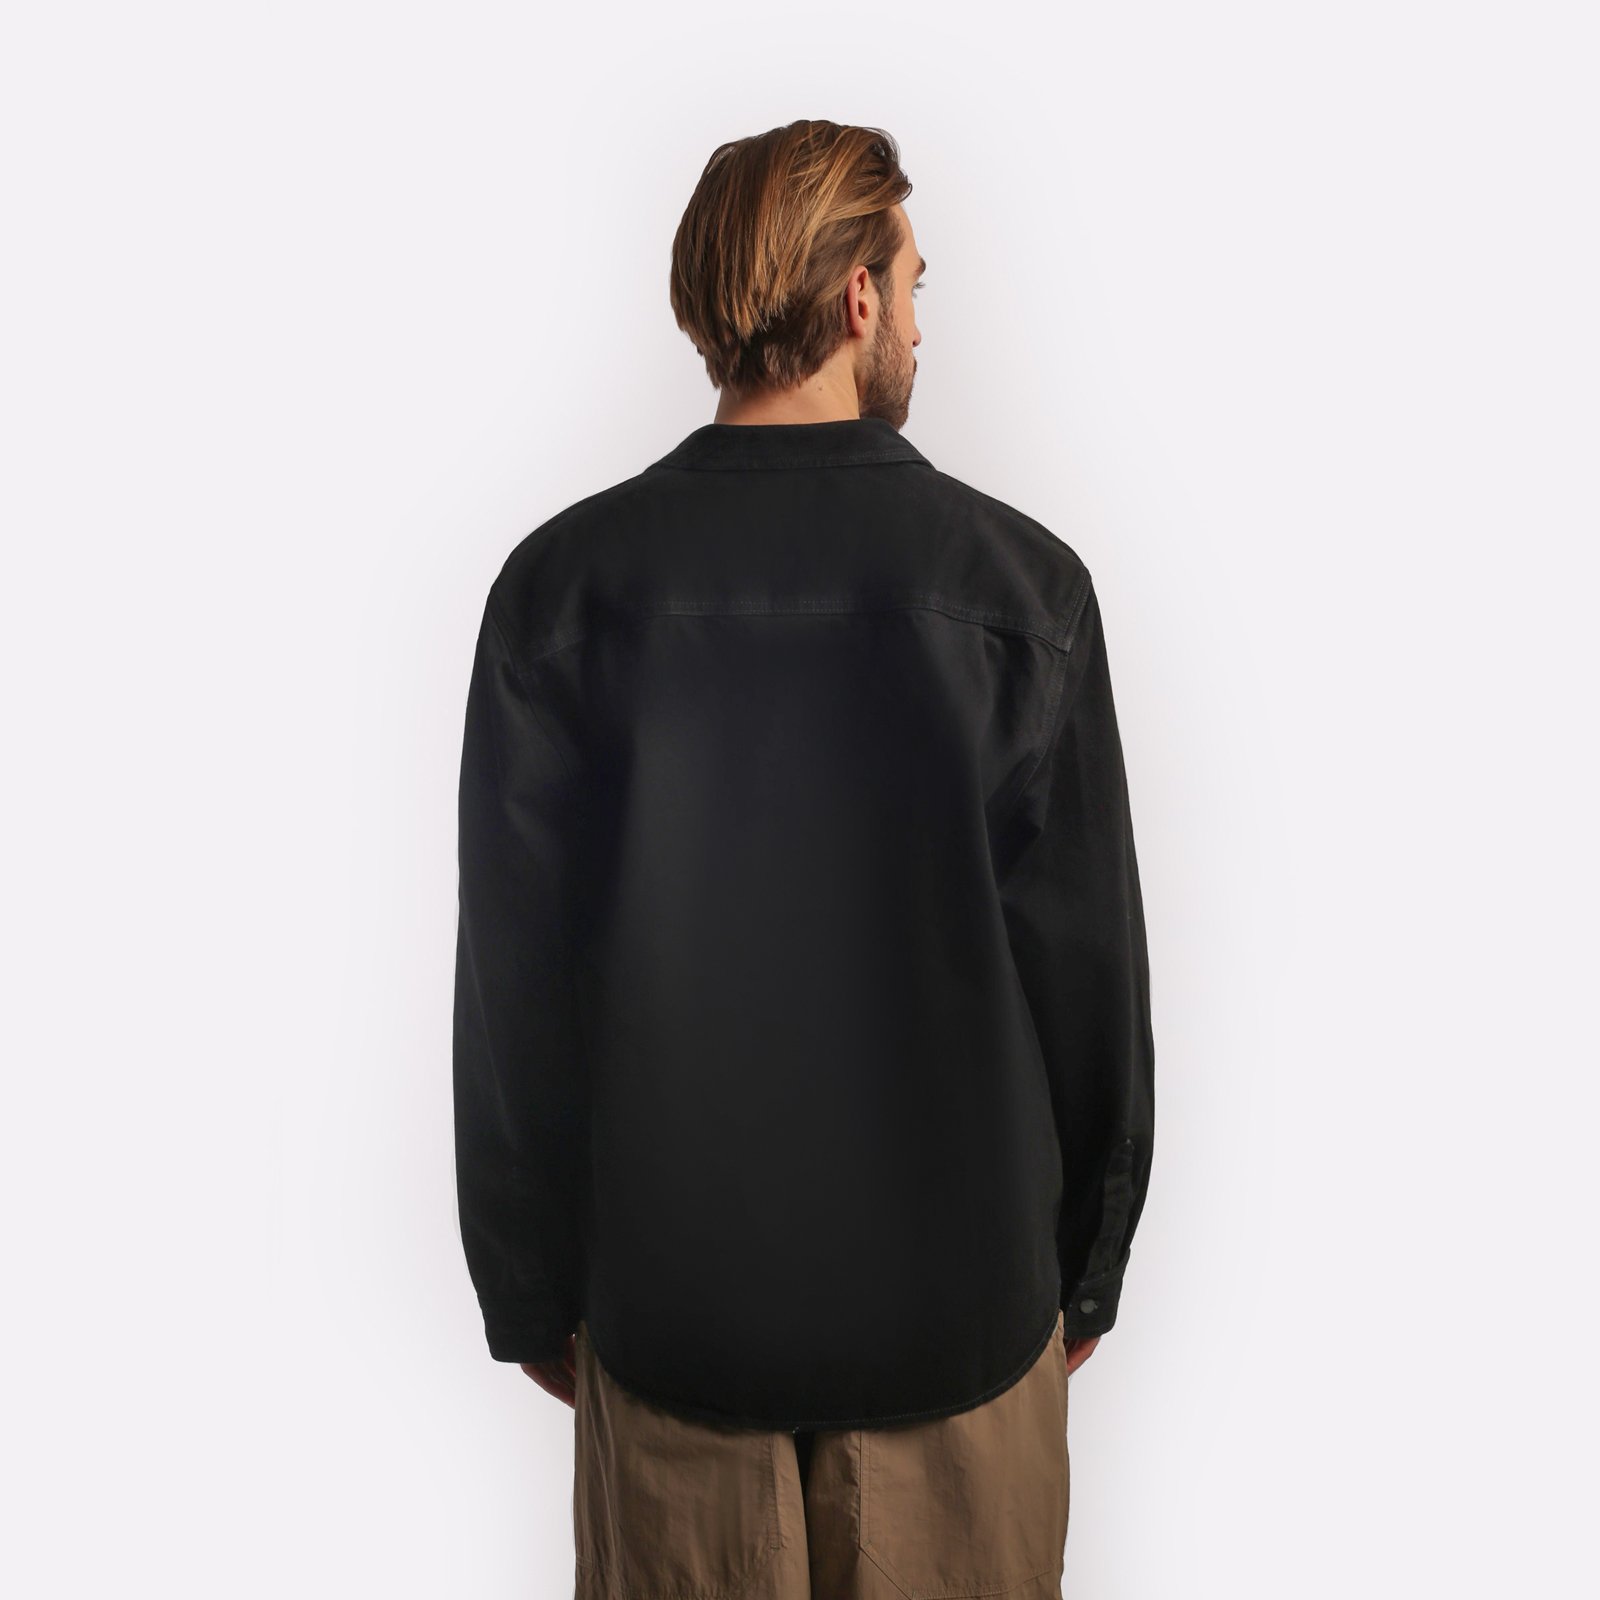 мужская куртка Carhartt WIP Manny Shirt Jac  (I032705-black)  - цена, описание, фото 2